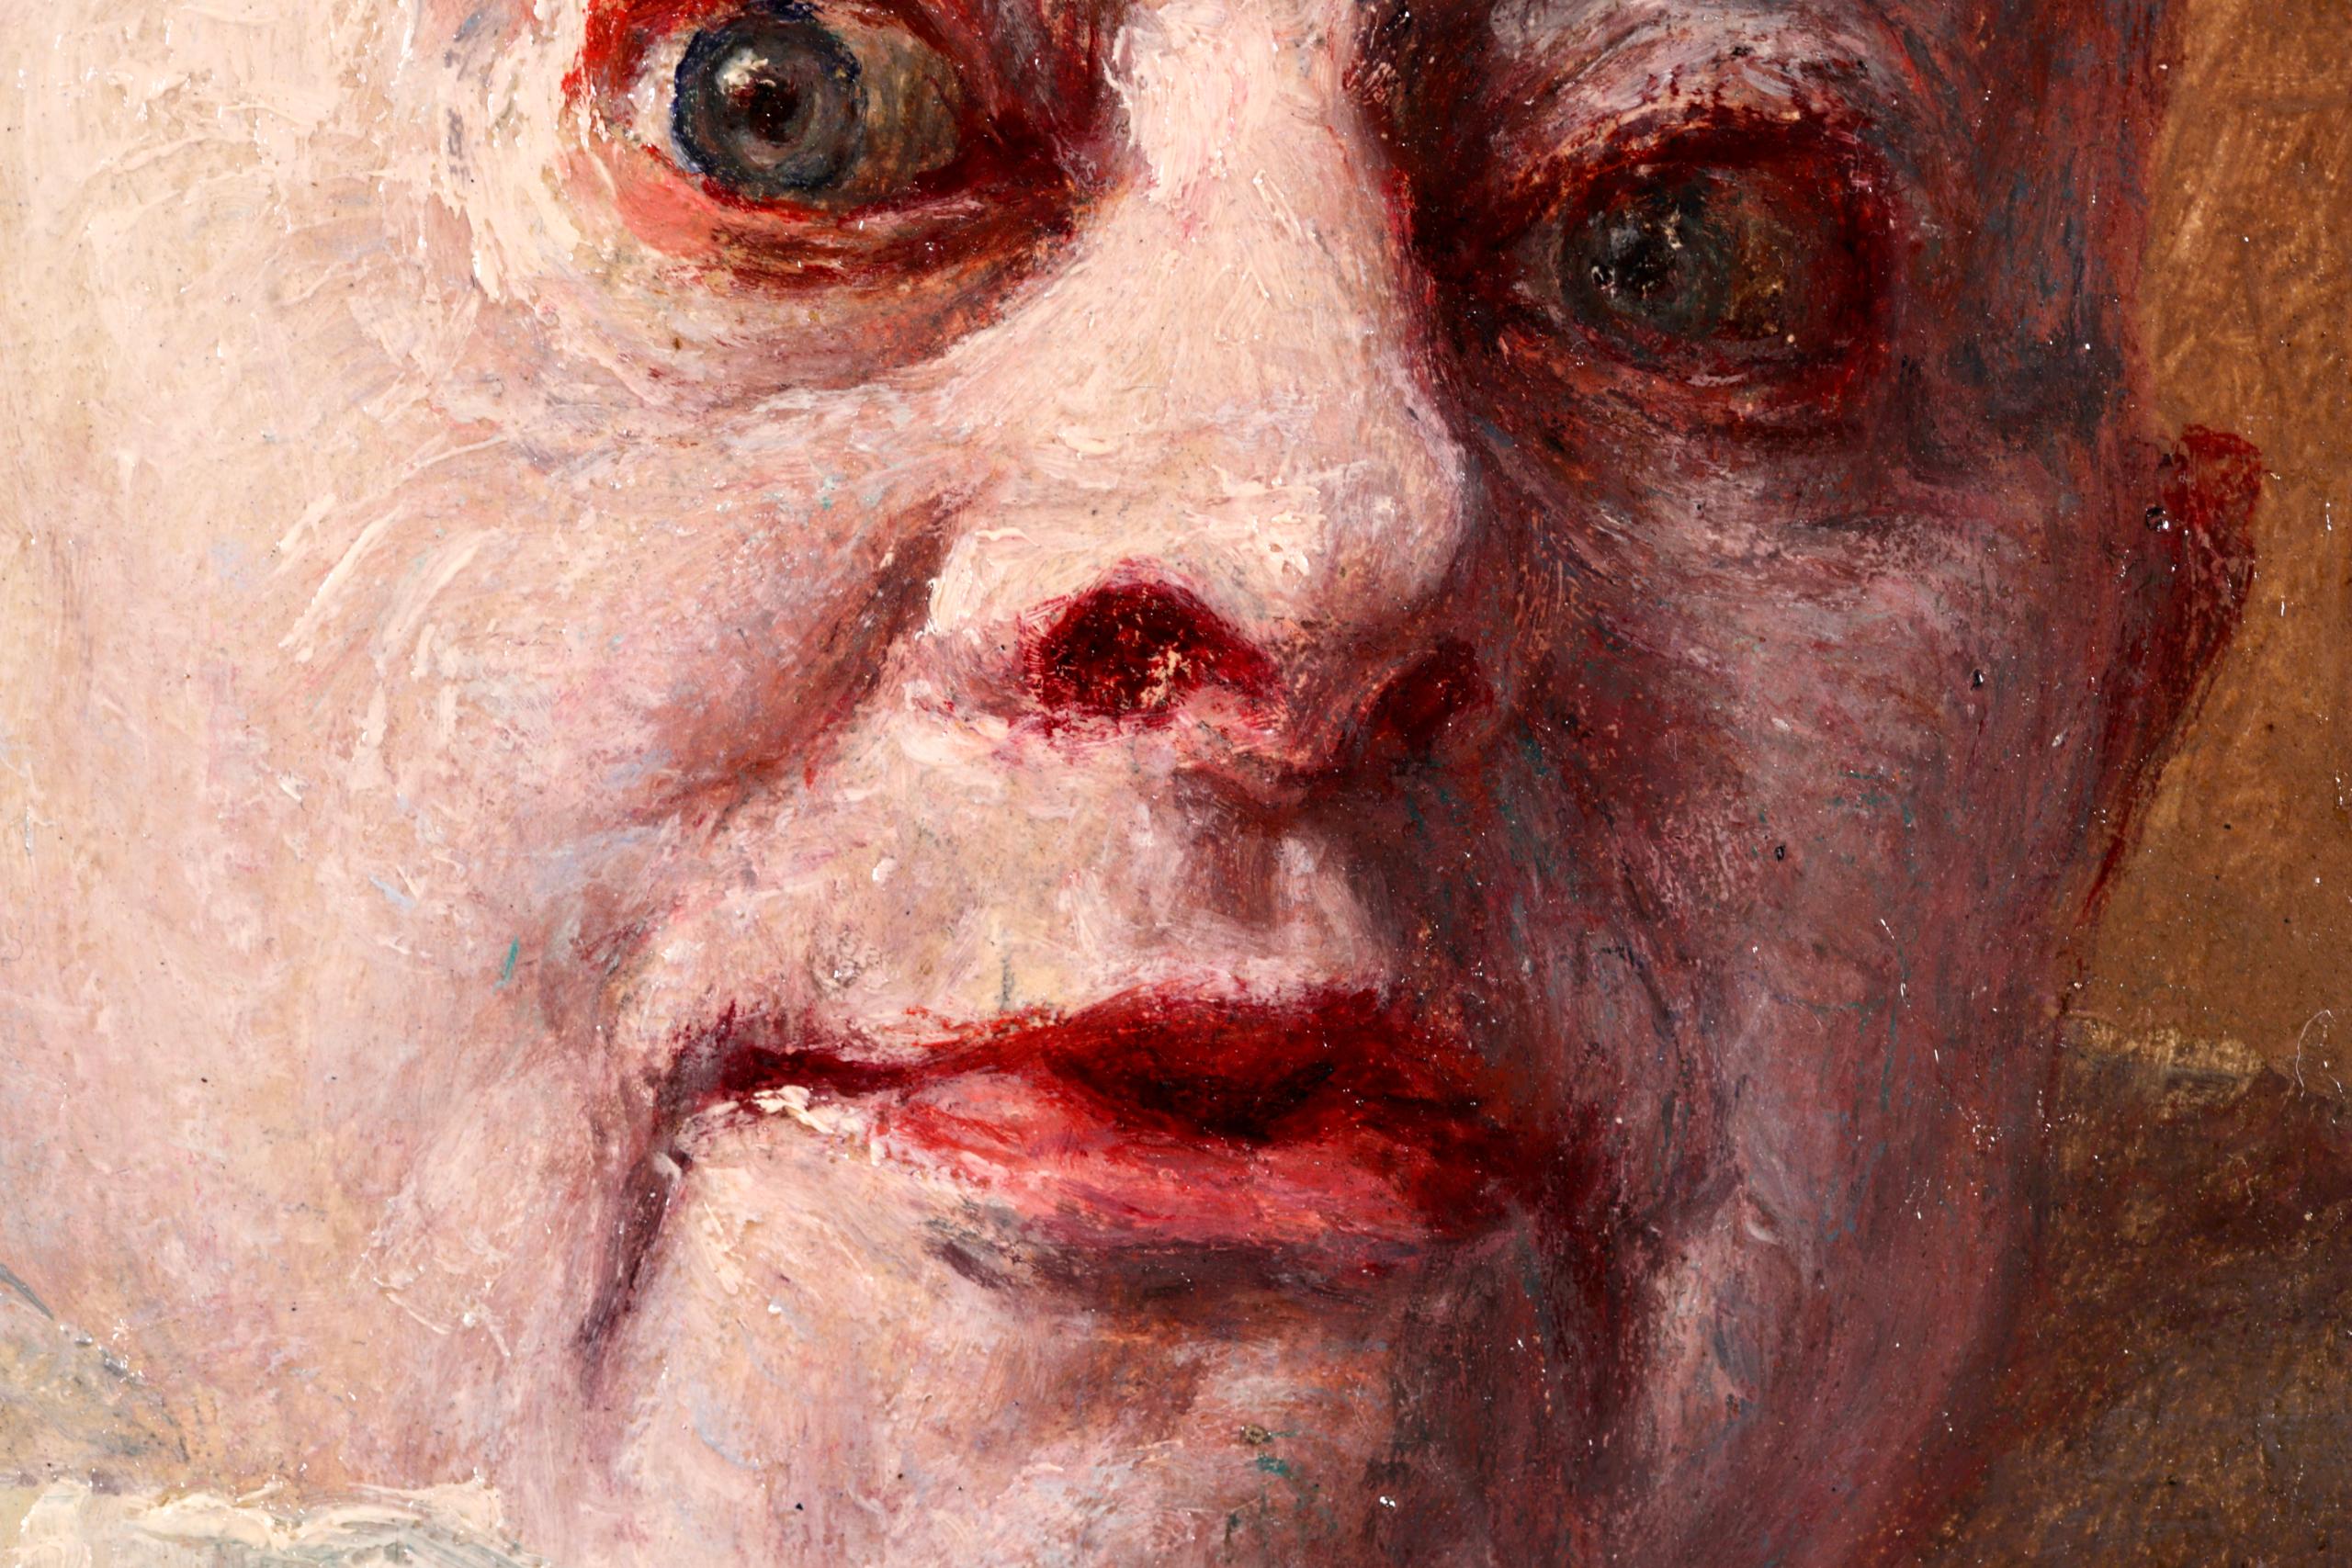 Signiertes impressionistisches Öl auf Tafel um 1910 von dem französischen Maler Armand Francois Henrion. Dieses charmante Werk zeigt das Porträt eines überraschten Pierrot - eines französischen Clowns - mit weiß gepudertem Gesicht, weißen Rüschen